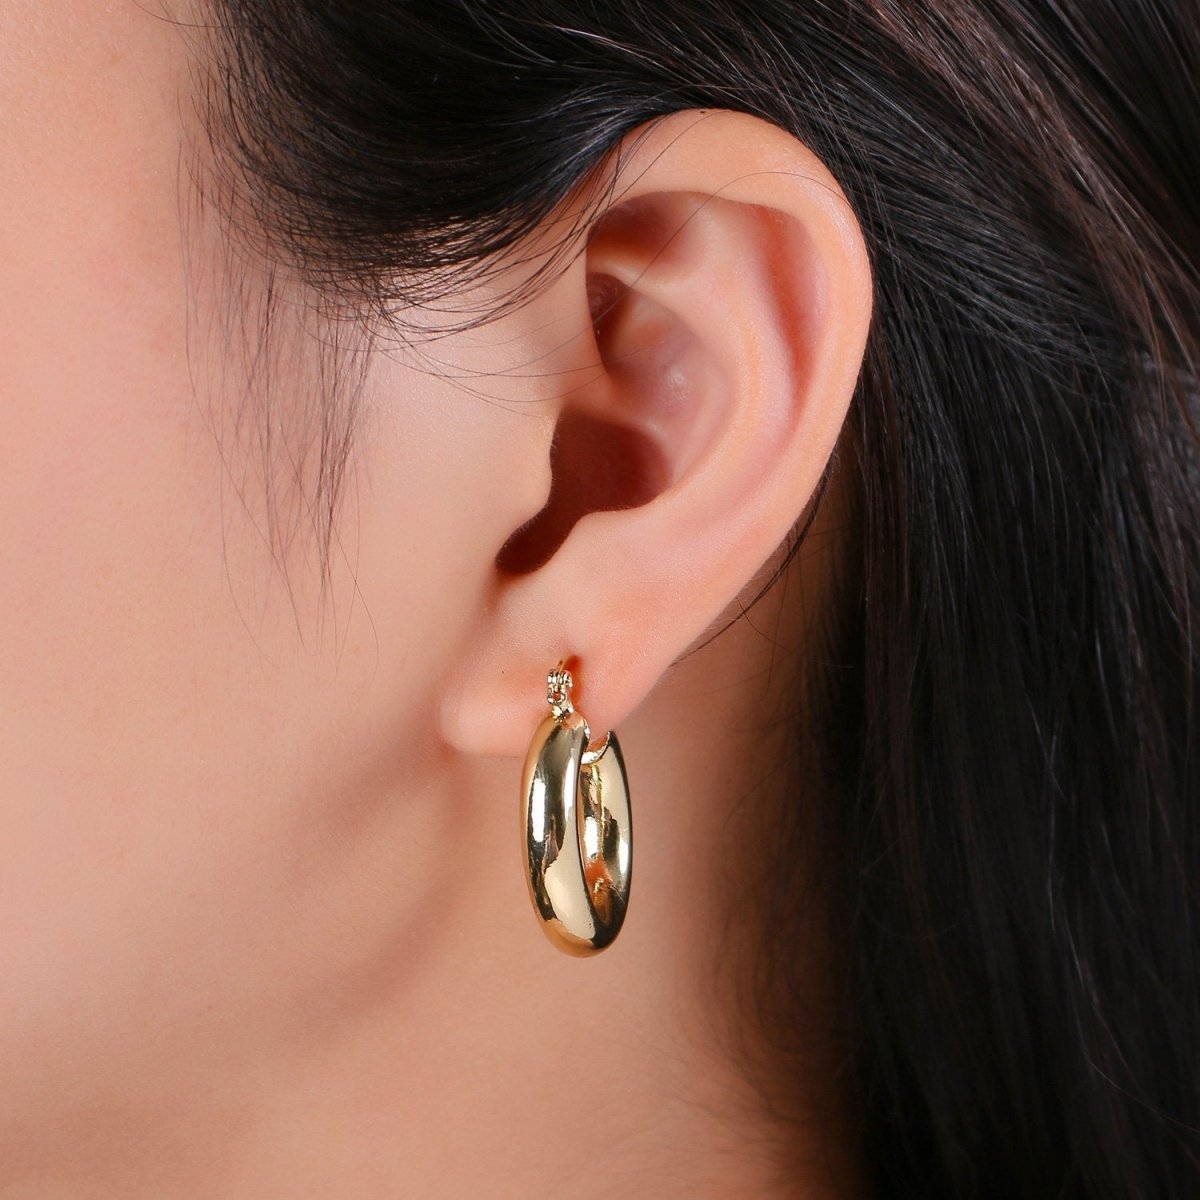 Chunky Lightweight Hoop Earrings - Hollow Light Hoop Earrings - Big Gold Hoops - Simple Everyday Earrings 40mm, 35mm, 30mm, 25mm, 20mm Q-460 - Q-463 - DLUXCA